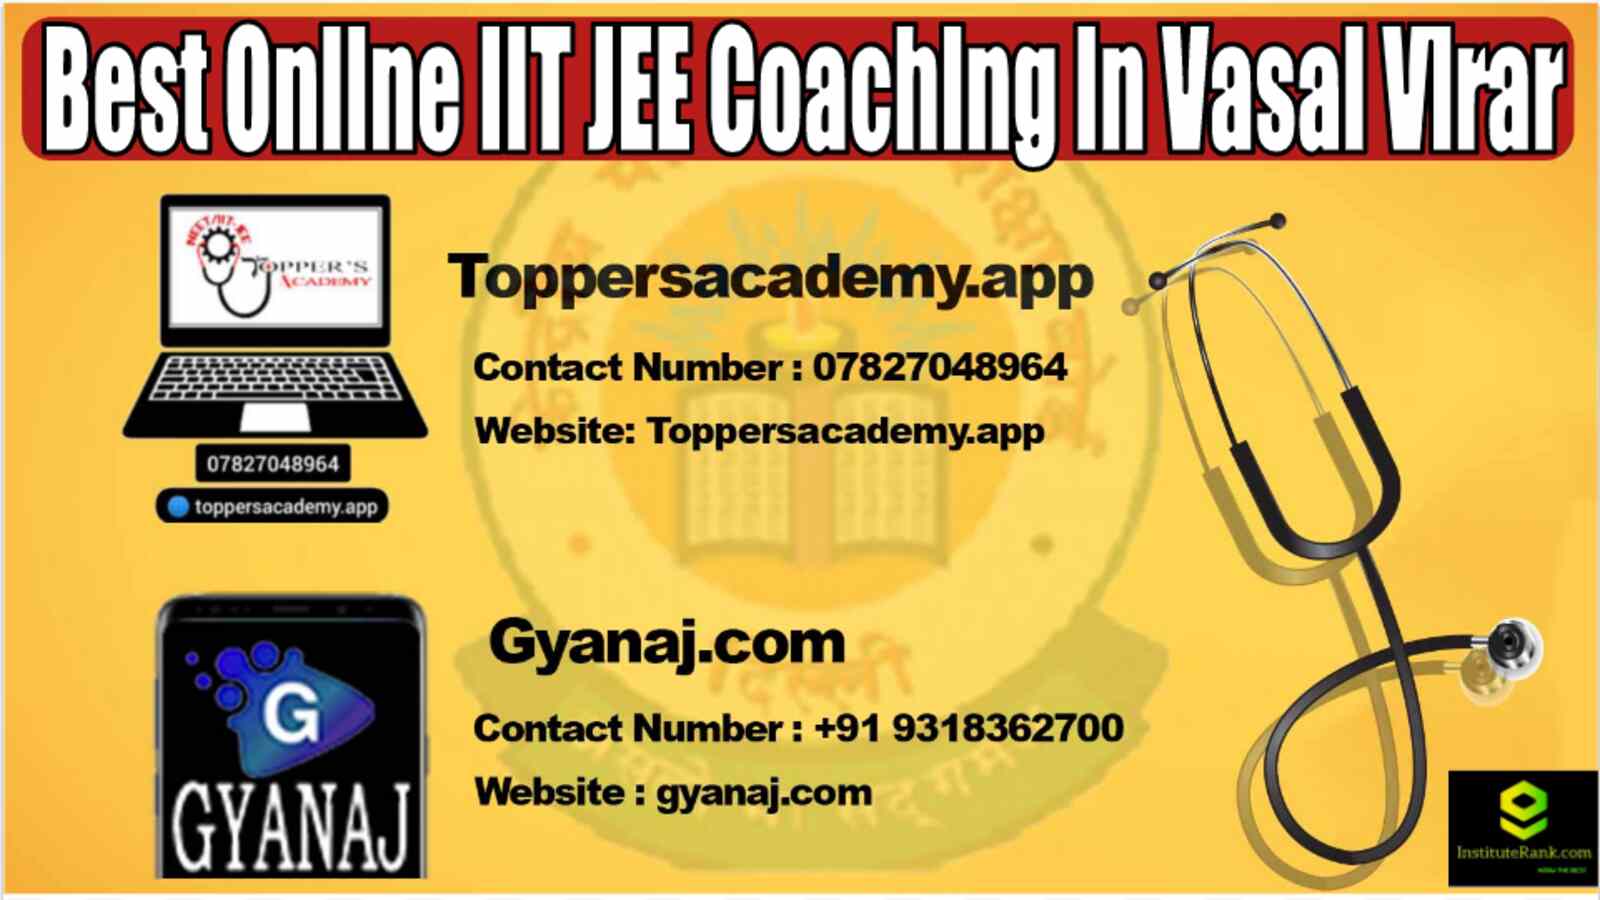 Best Online IIT JEE Coaching in Vasai Virar 2022